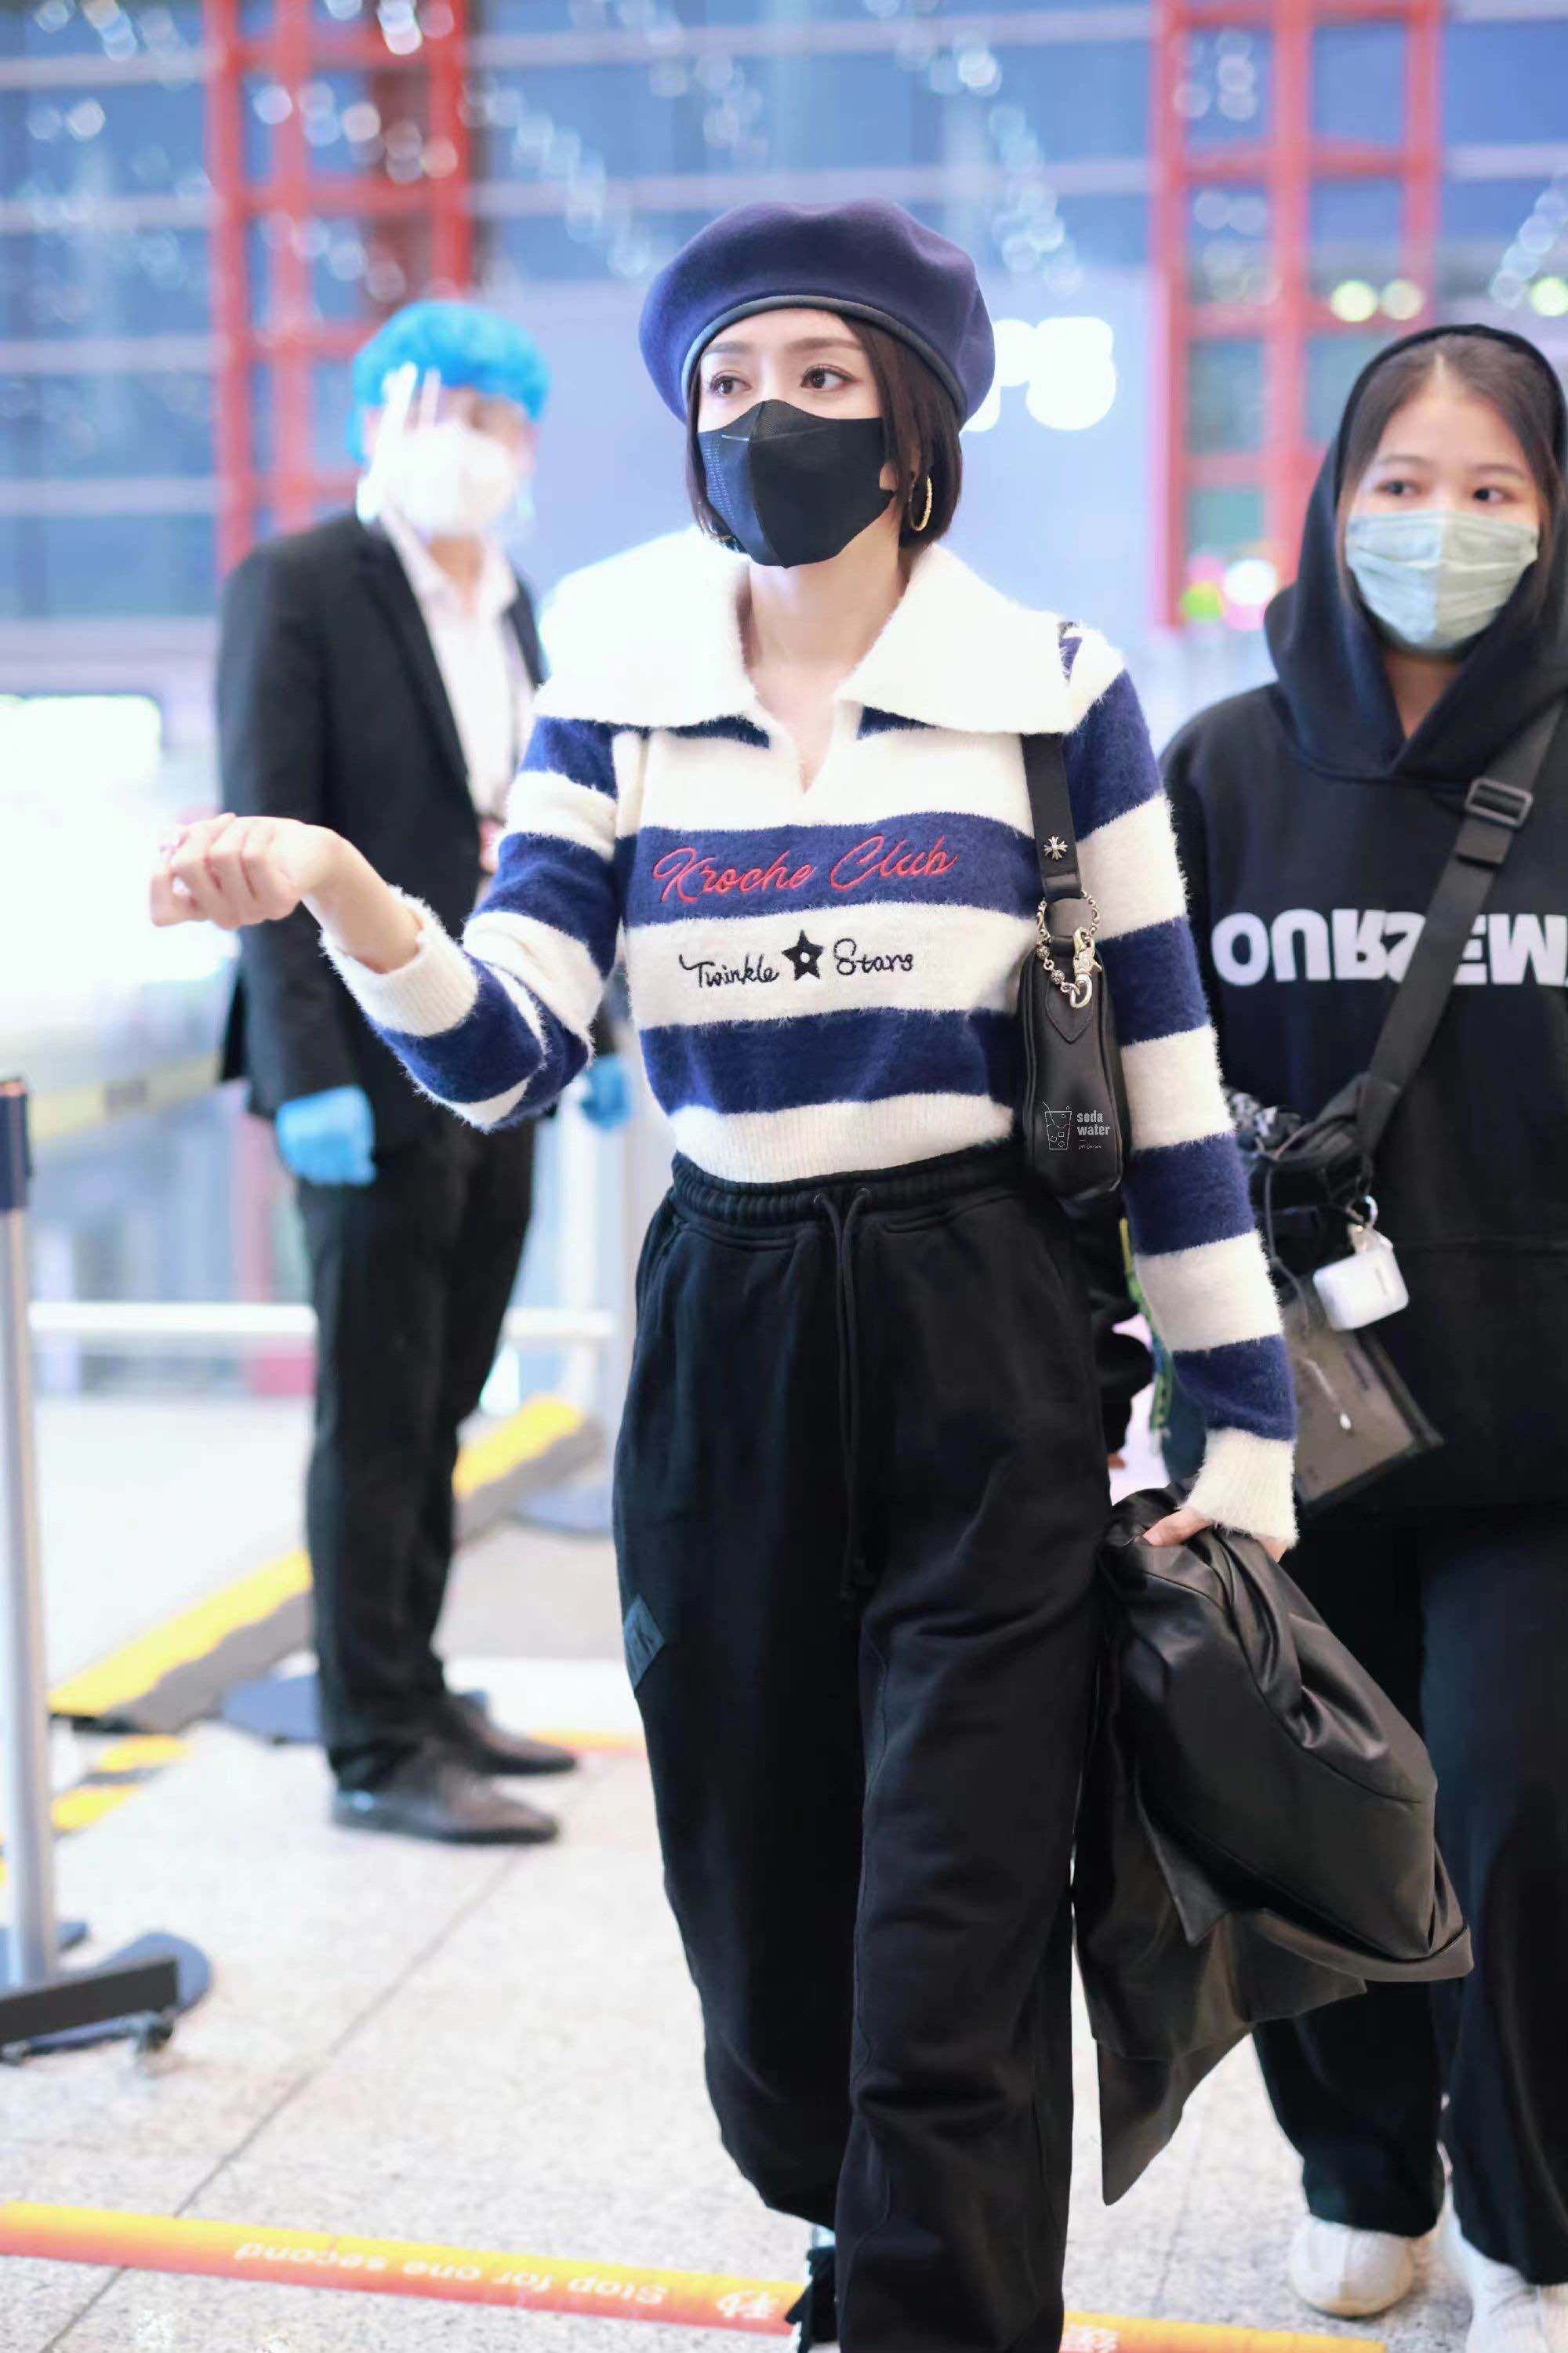 秦岚的机场私服太好看了,毛衣配卫裤减龄时髦,真显新潮!